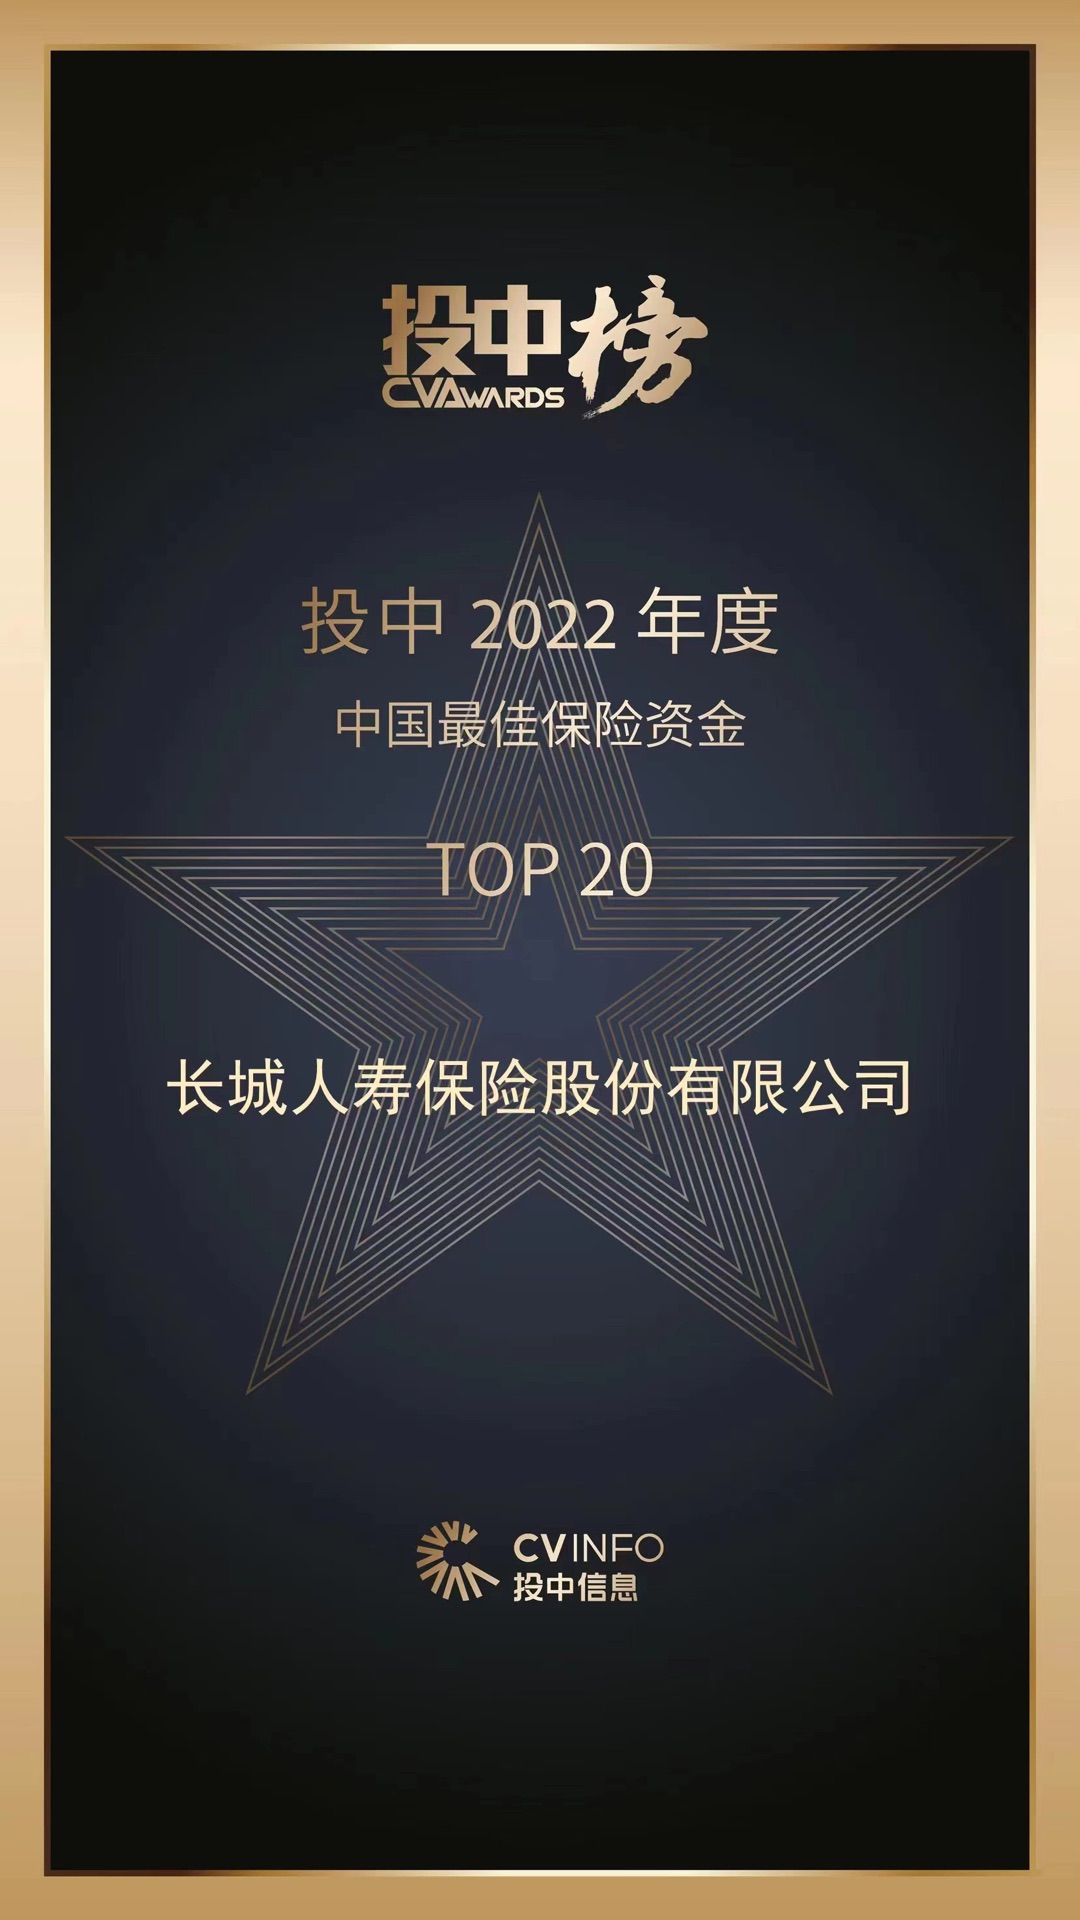 長城人壽獲評2022年度中國最佳保險資金TOP20